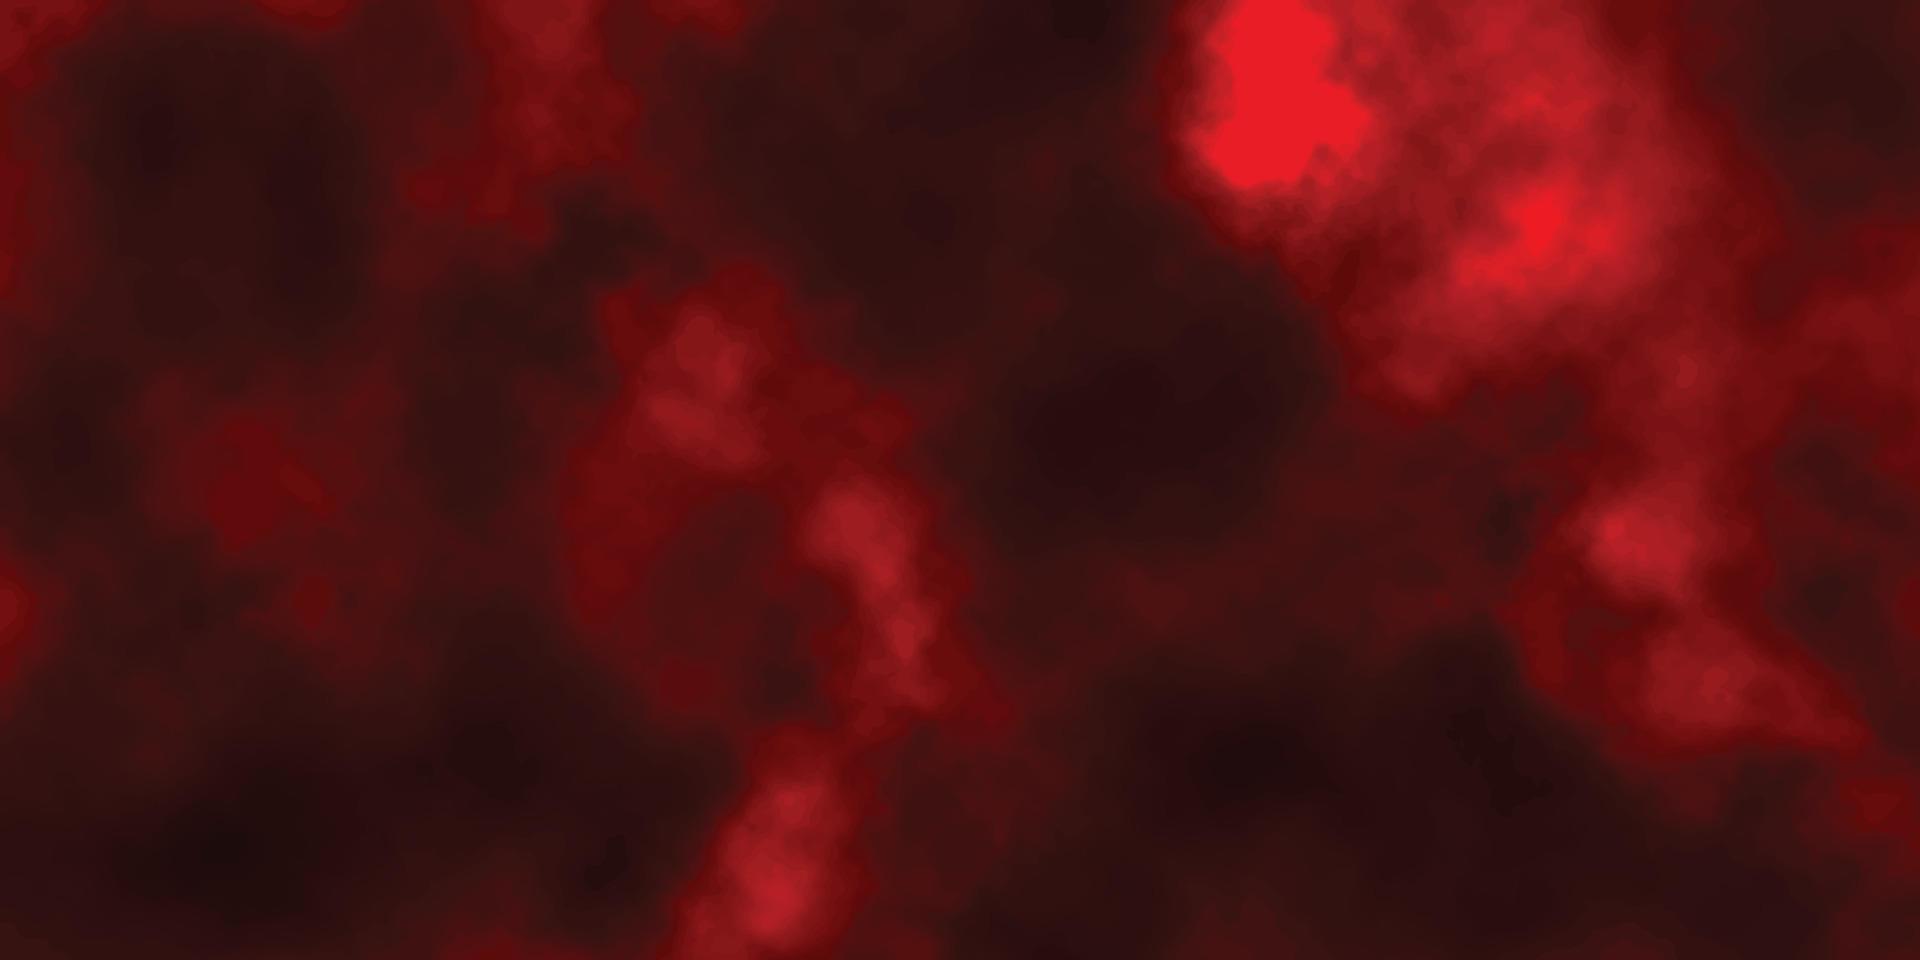 rood grunge achtergrond met ruimte voor tekst, abstract waterverf rood grunge achtergrond schilderen, rood cement muur met donker structuur achtergrond, oud getextureerde zwart en rood hand- geschilderd grunge achtergrond vector